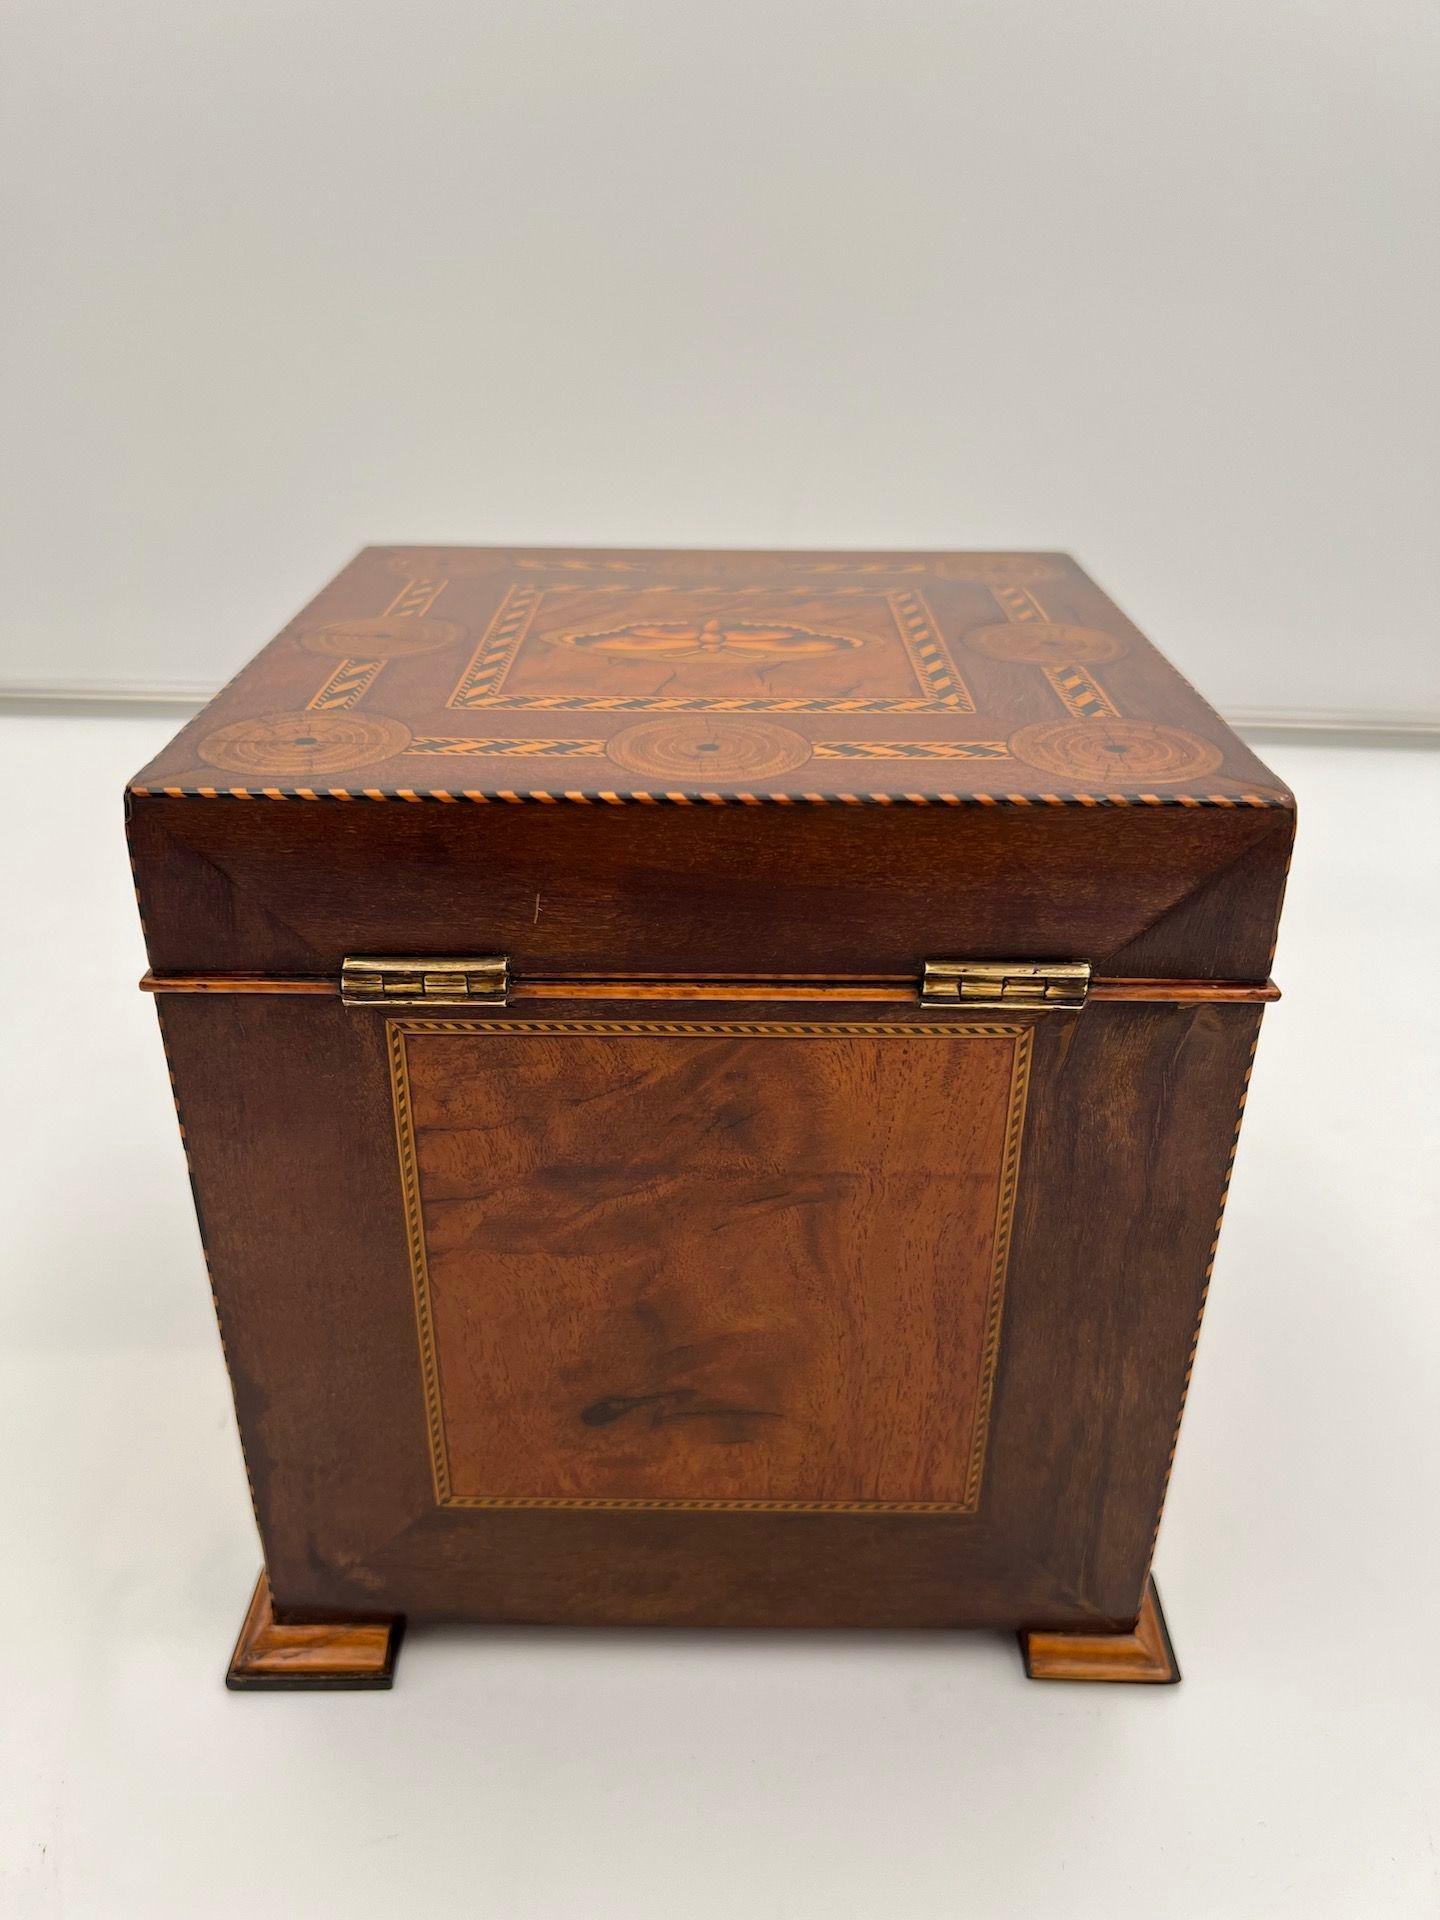 Ebony Cubic Biedermeier Box, Walnut with Inlays, Austria, circa 1830